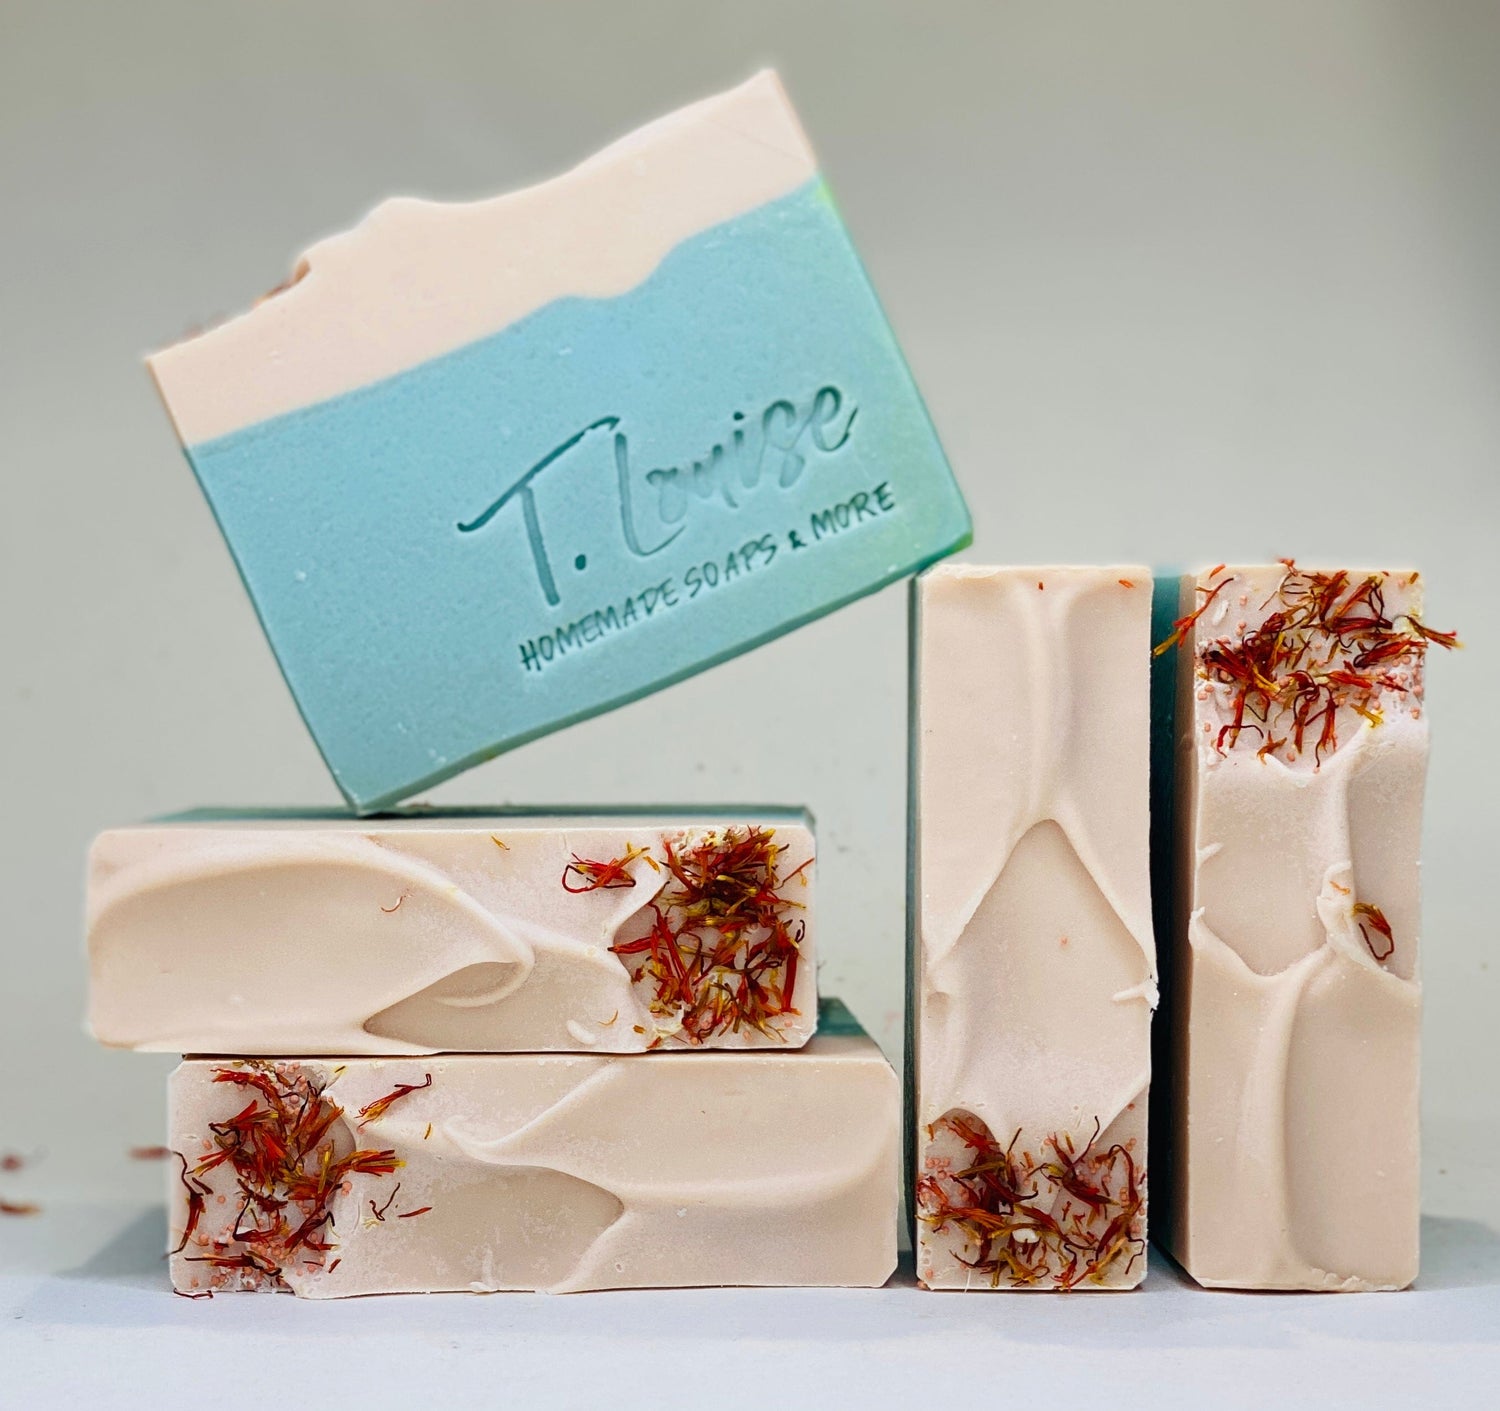 Rosemary & Peppermint handmade soap